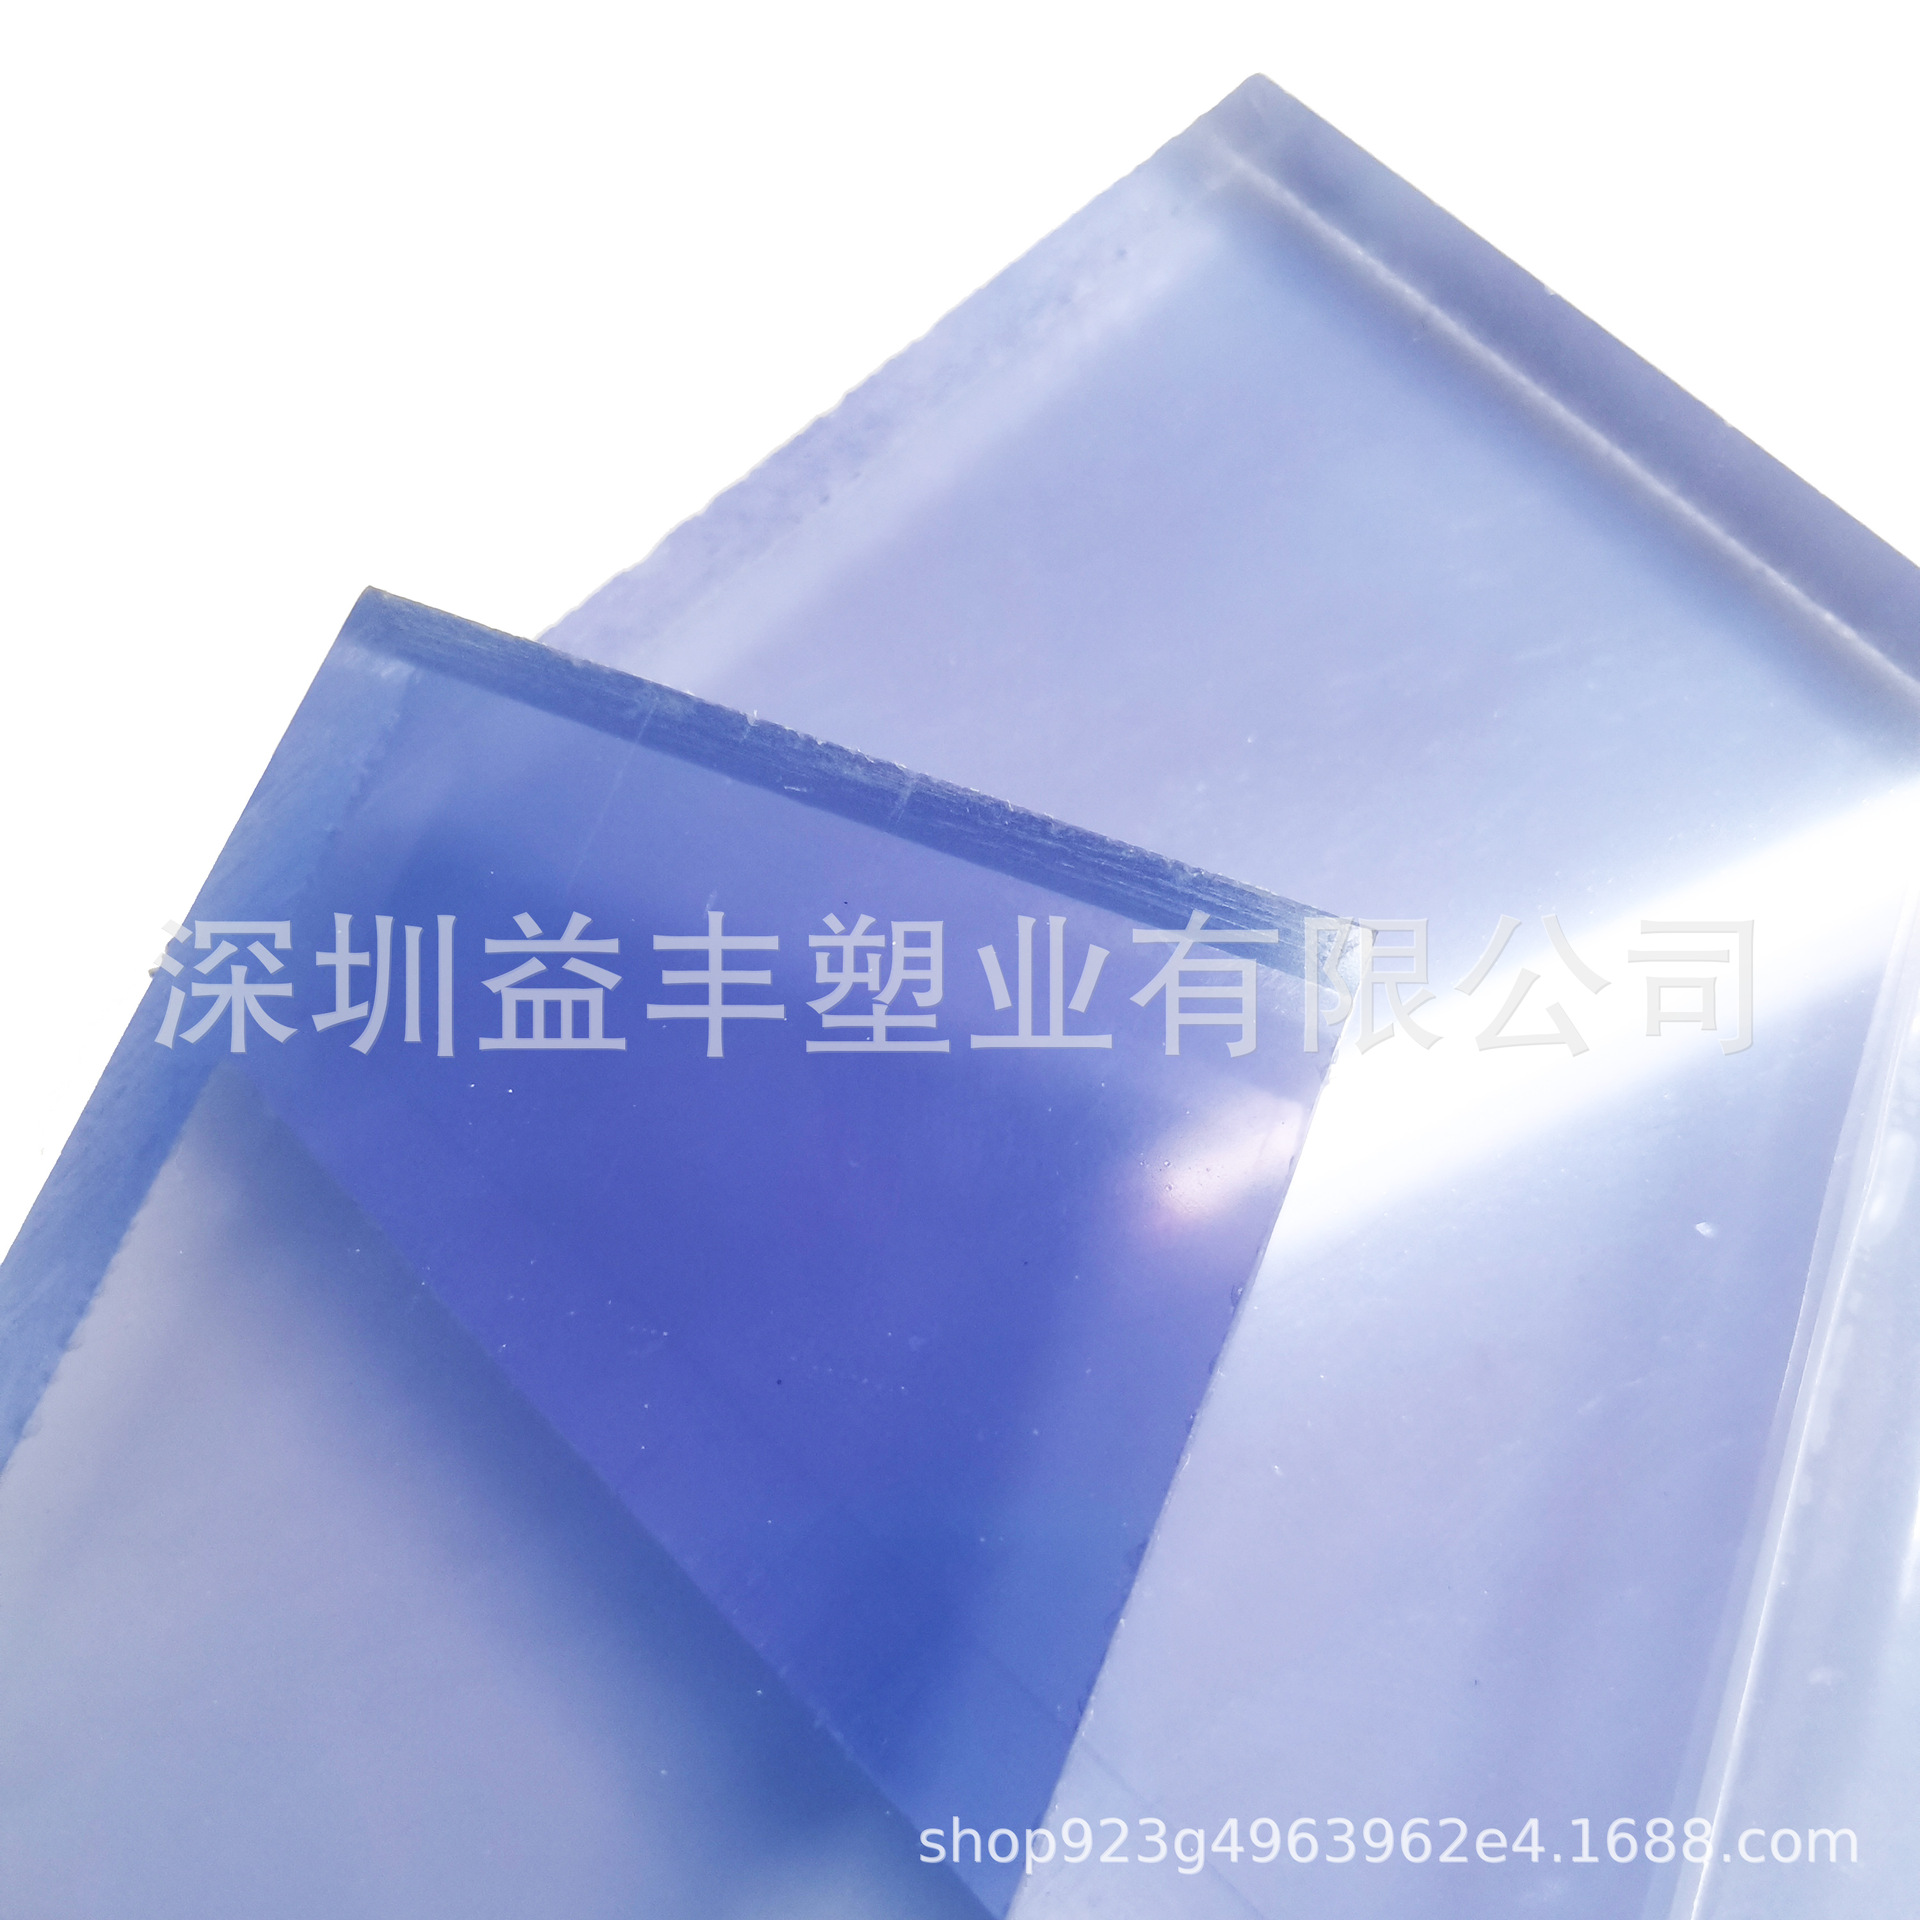 浅蓝底透明PVC板 硬胶板有机玻璃PVC塑料板 可裁切工程塑料板